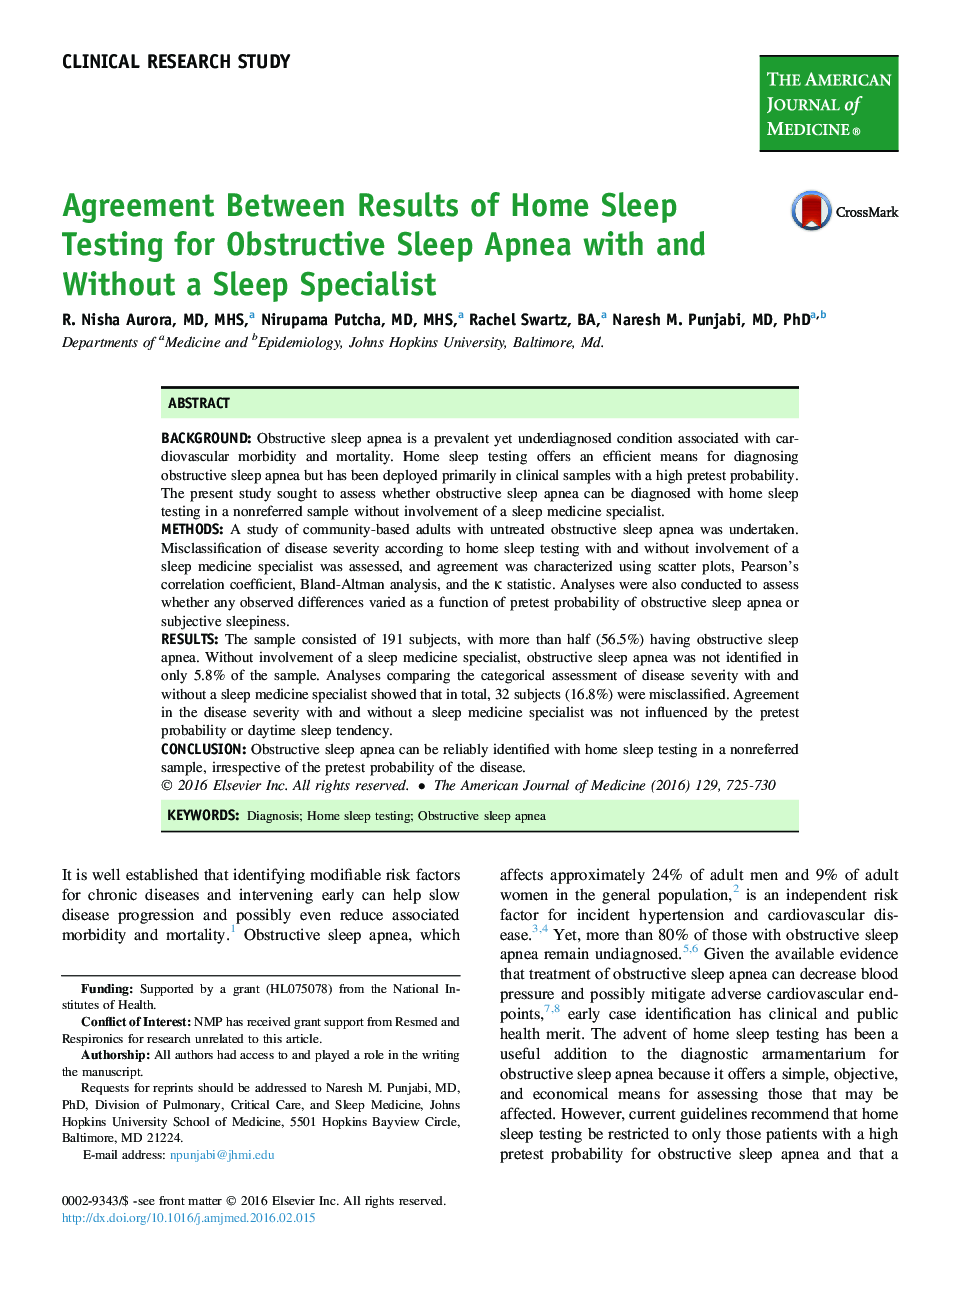 توافق بین نتایج تست خواب در خانه برای آپنه انسدادی خواب با و بدون یک متخصص خواب